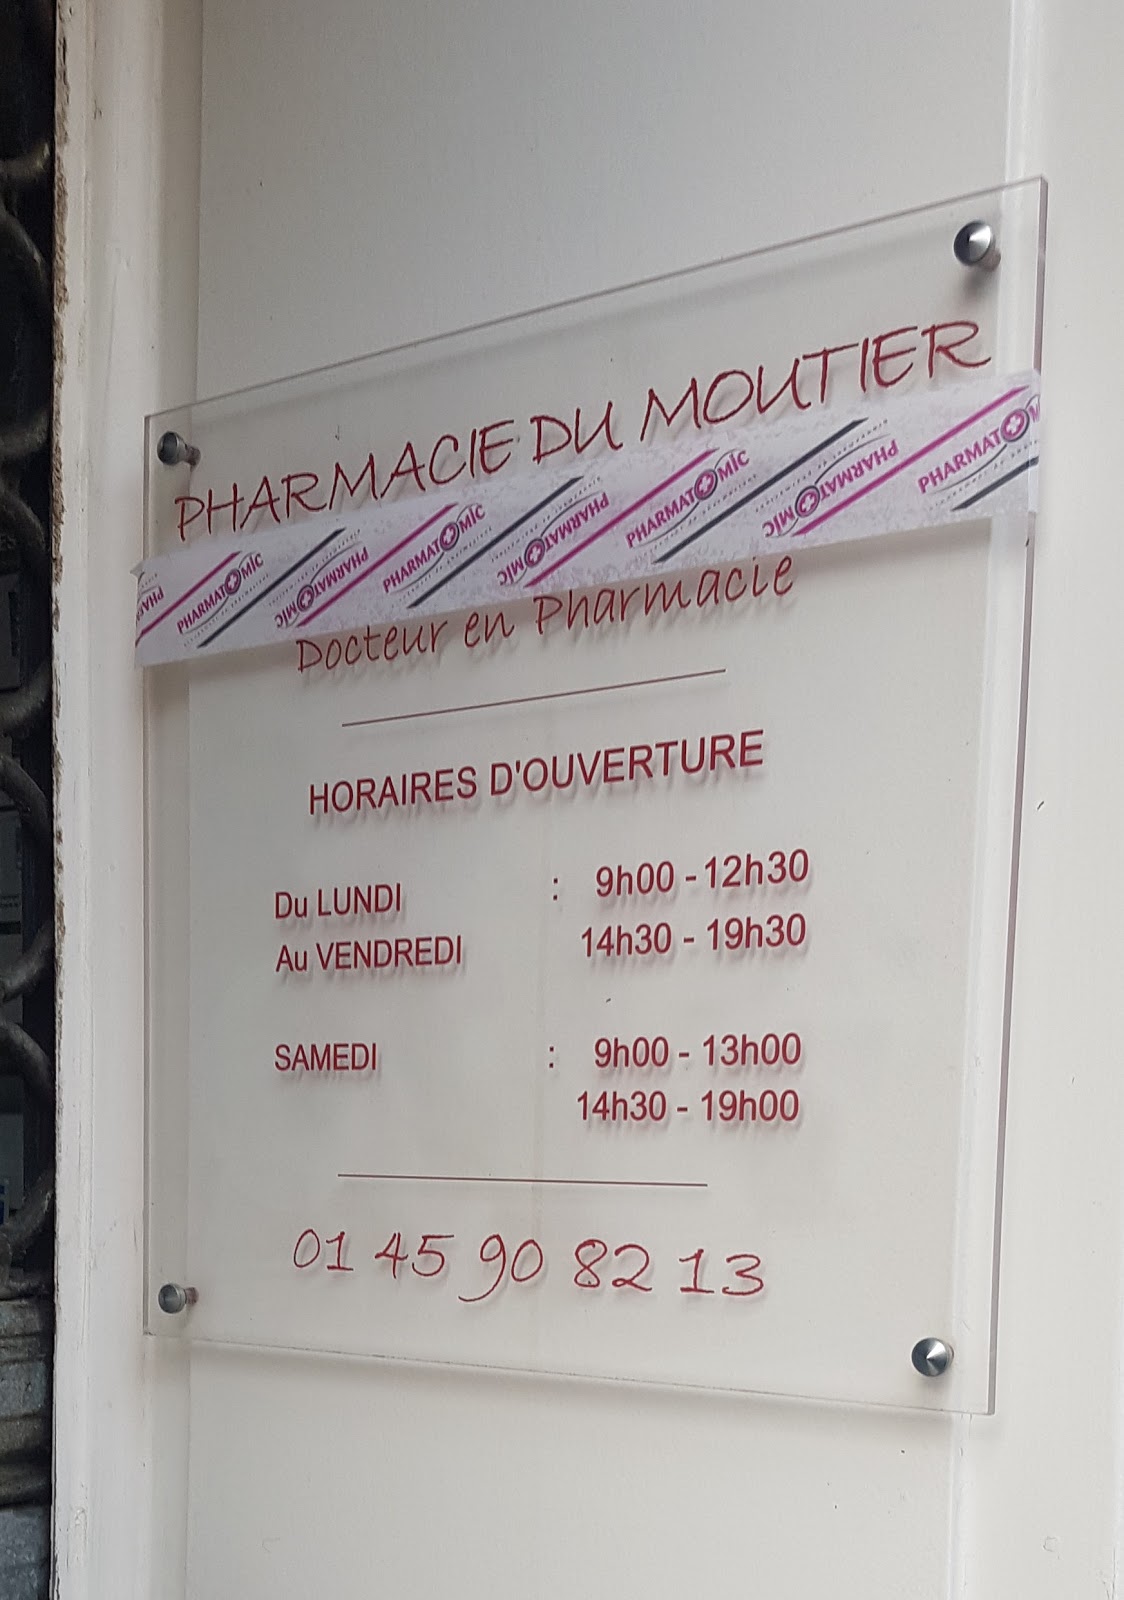 Pharmacie du Moutier